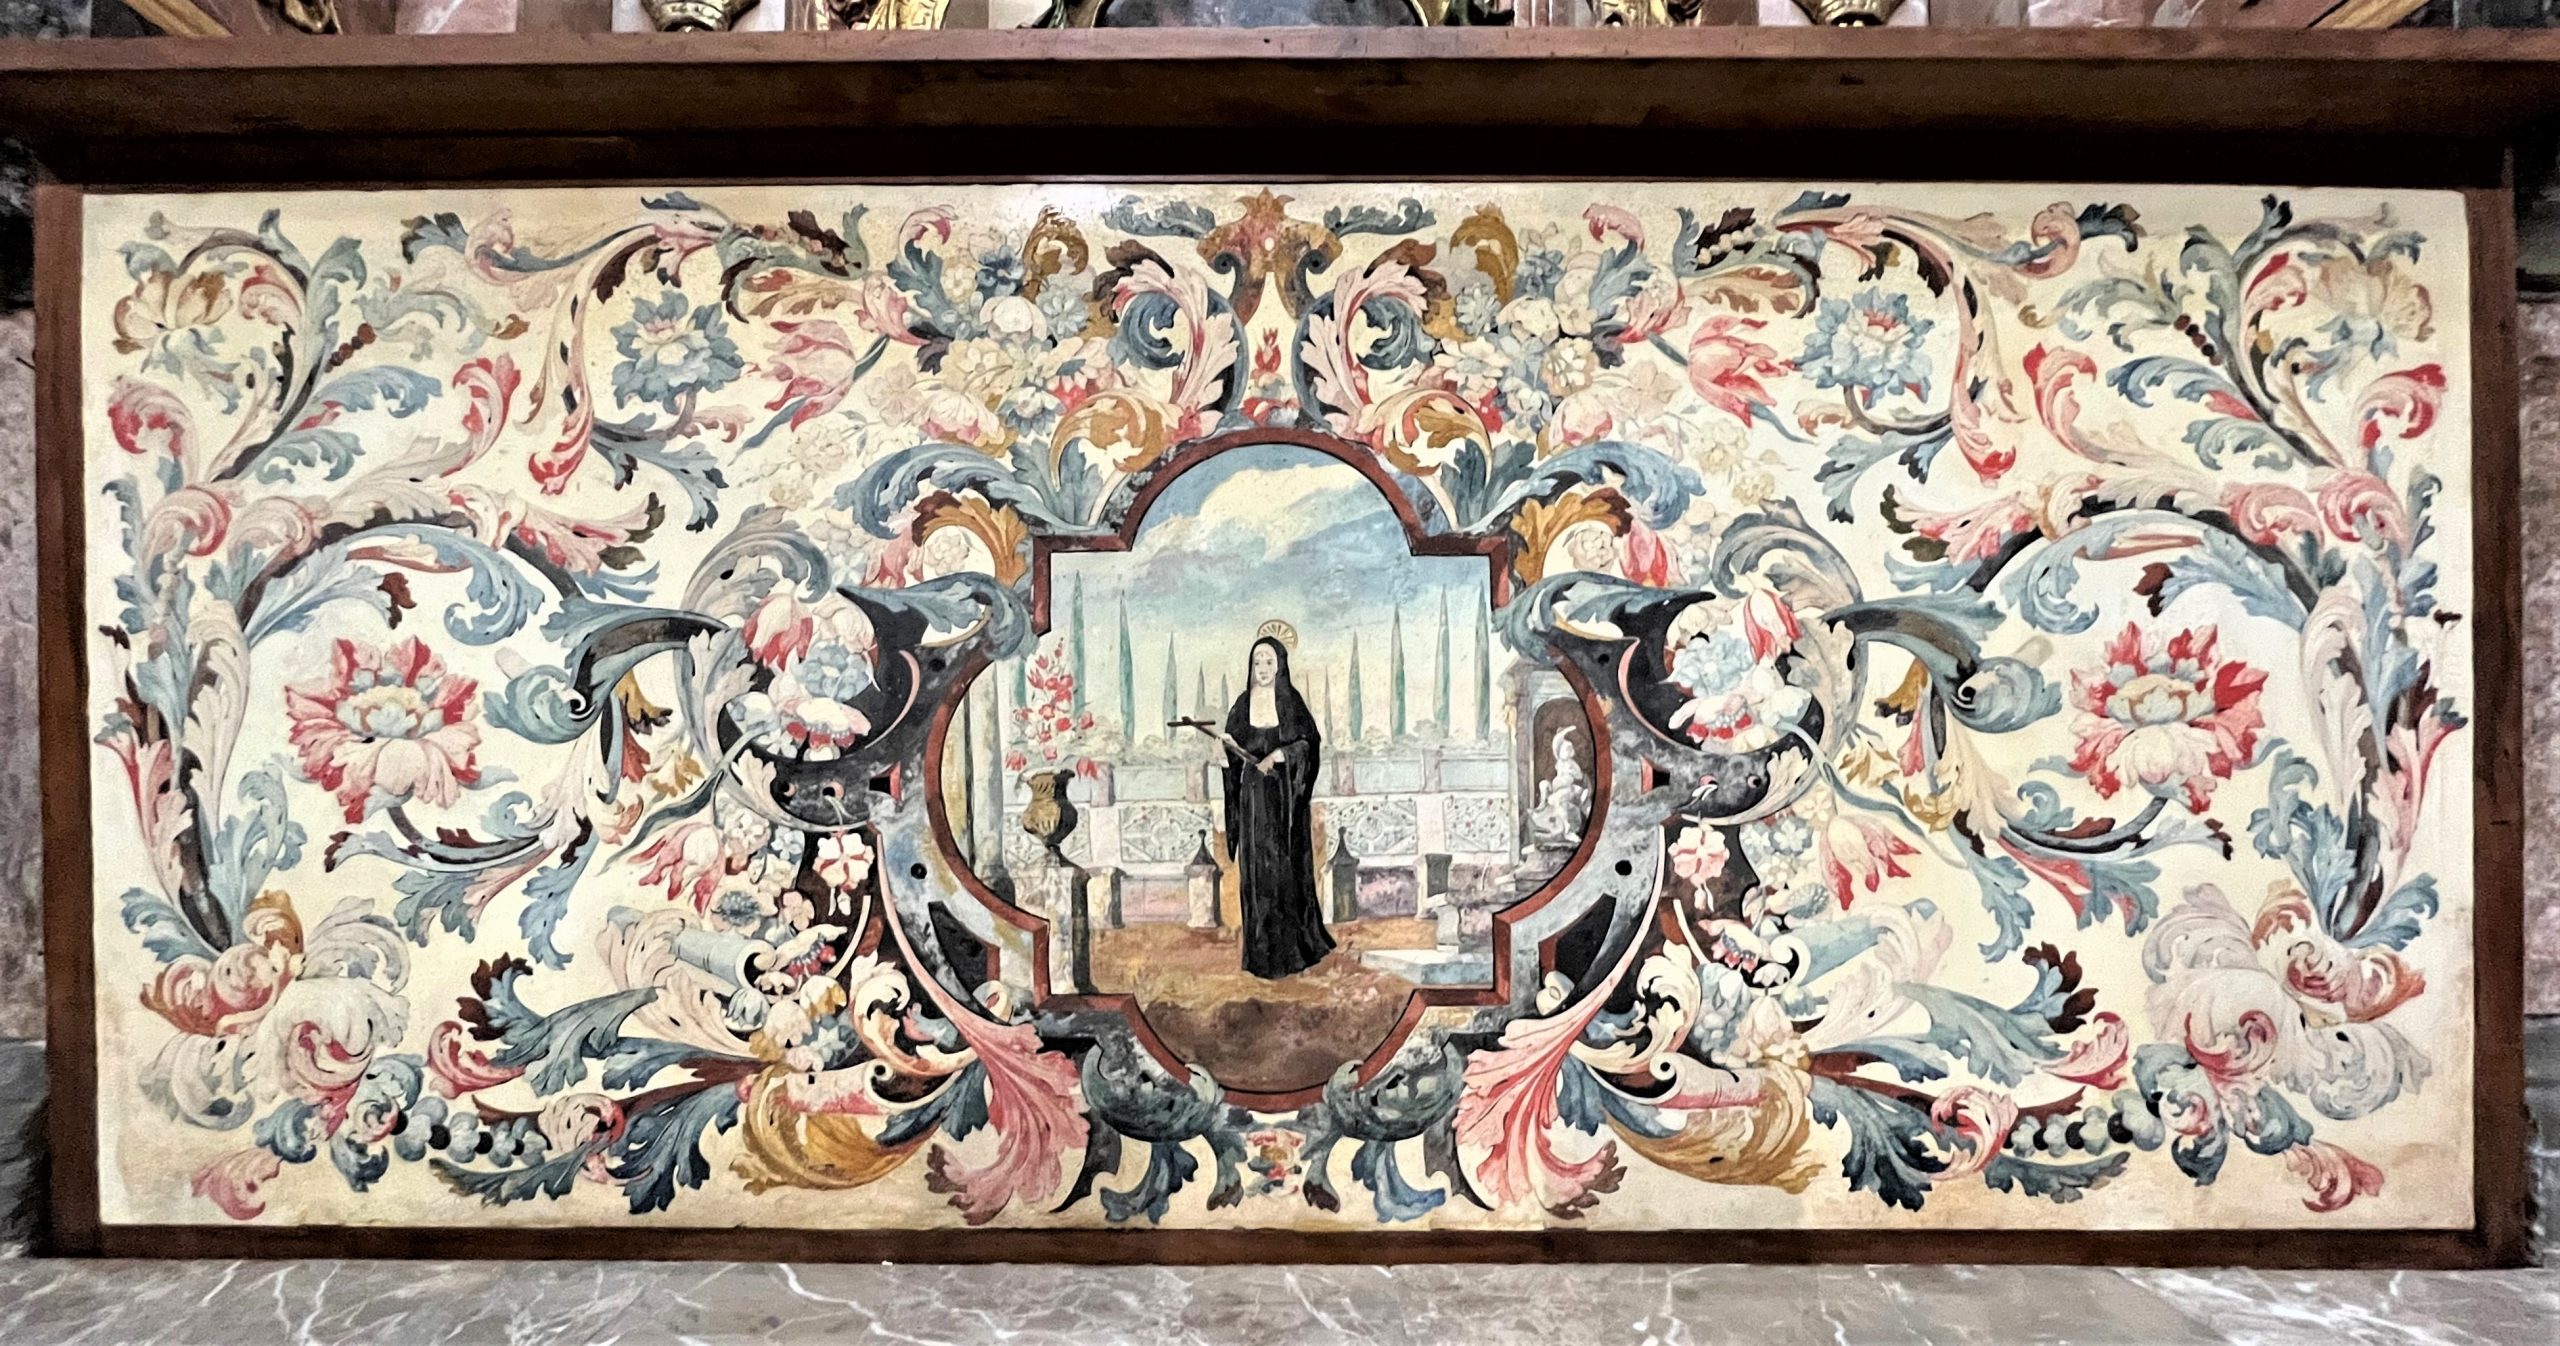 El antipendio del retablo de Santa Rita de Casia